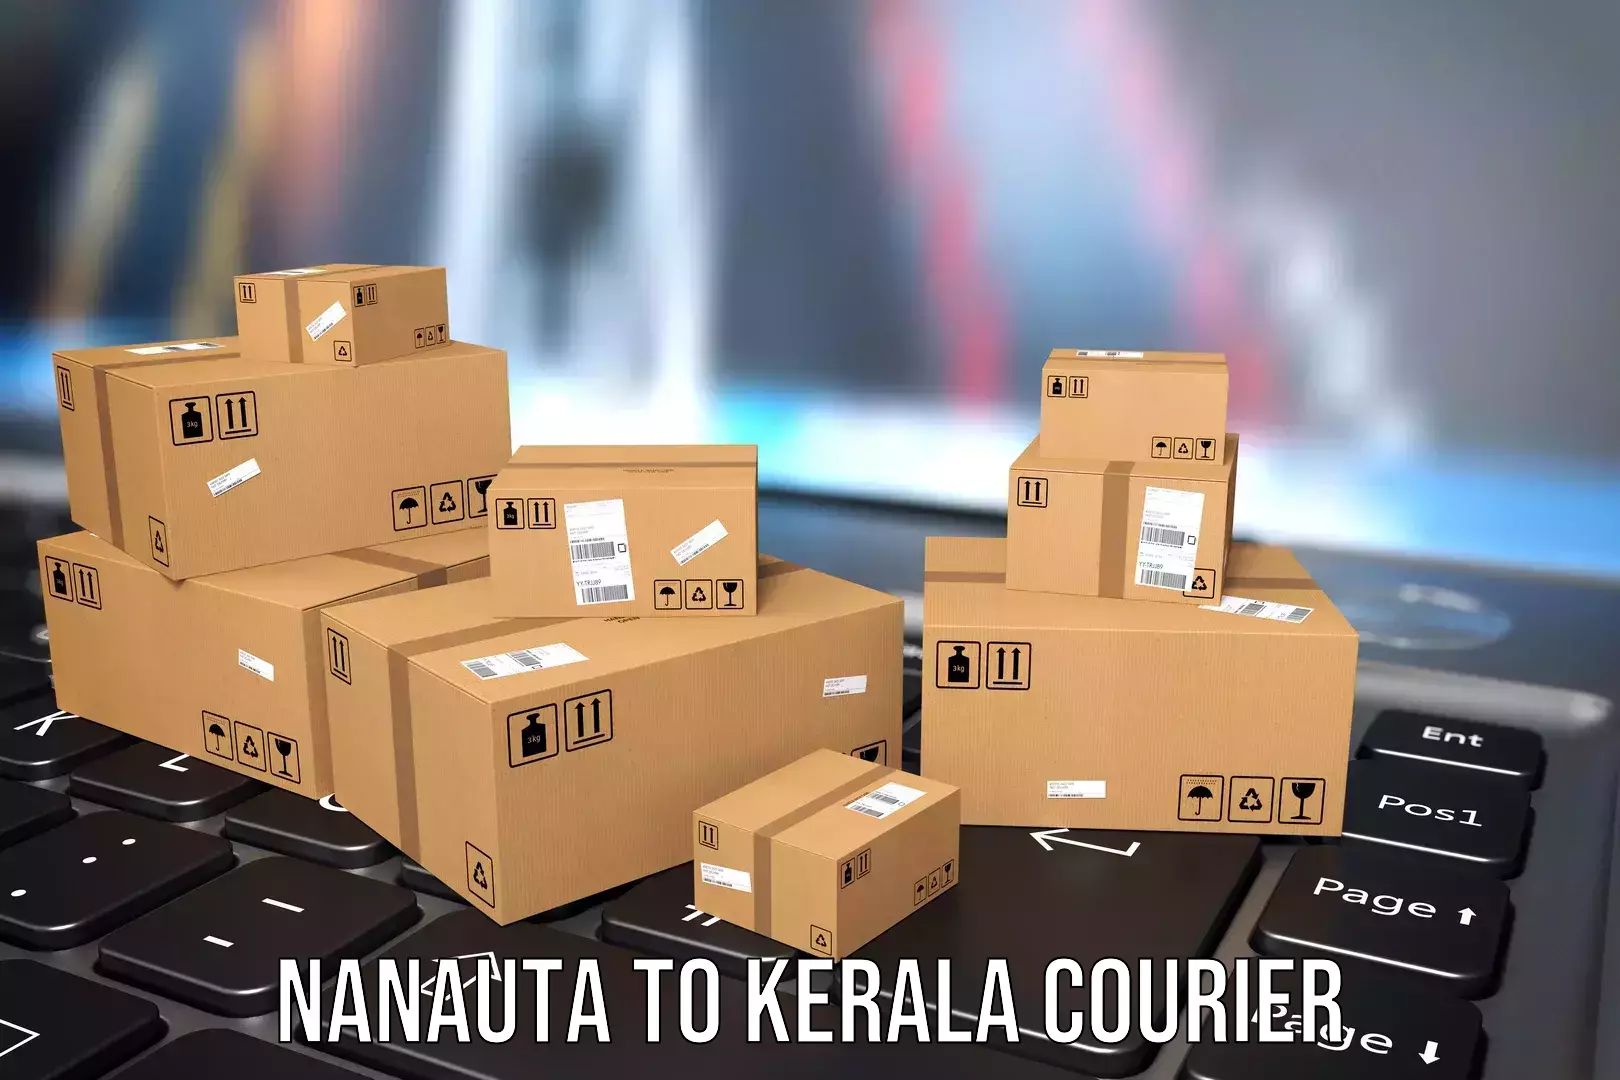 Reliable luggage courier Nanauta to Kerala